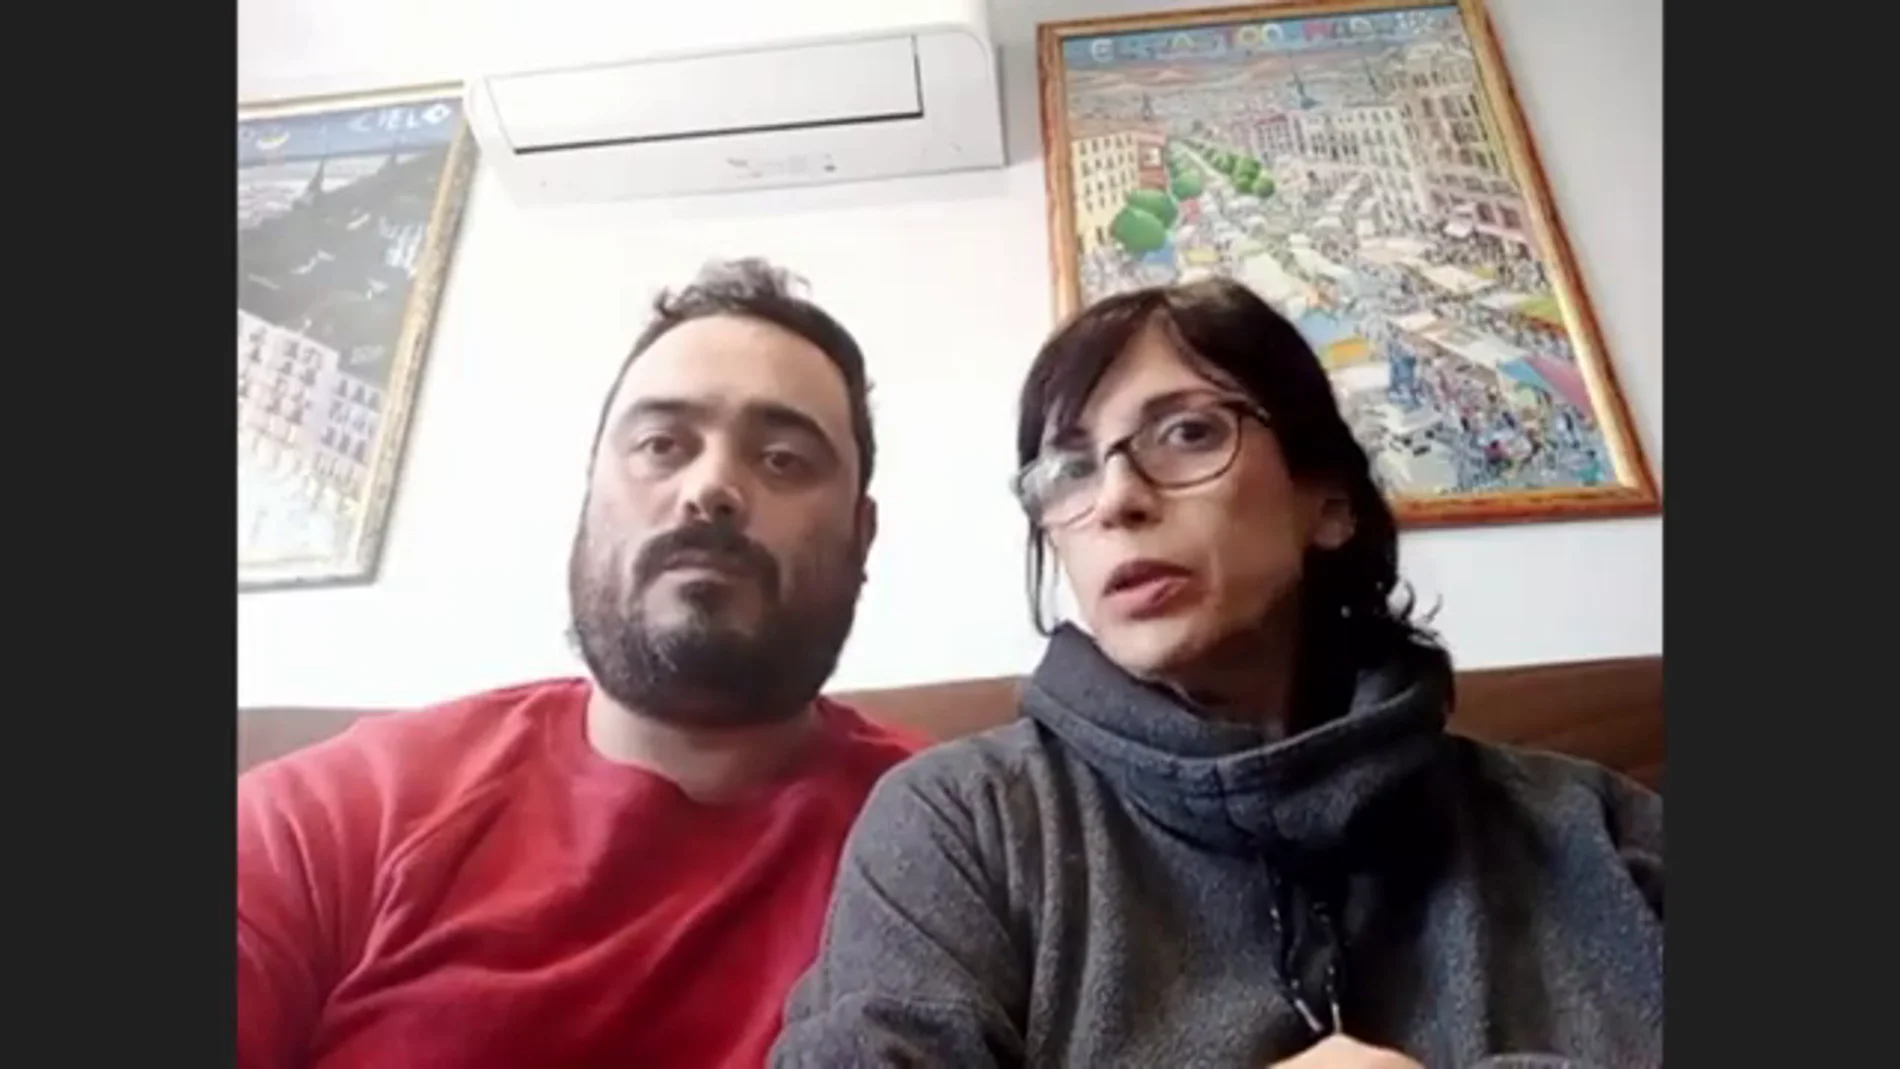 Una pareja española pide ayuda para traer de Ucrania a sus mellizos por gestación subrogada